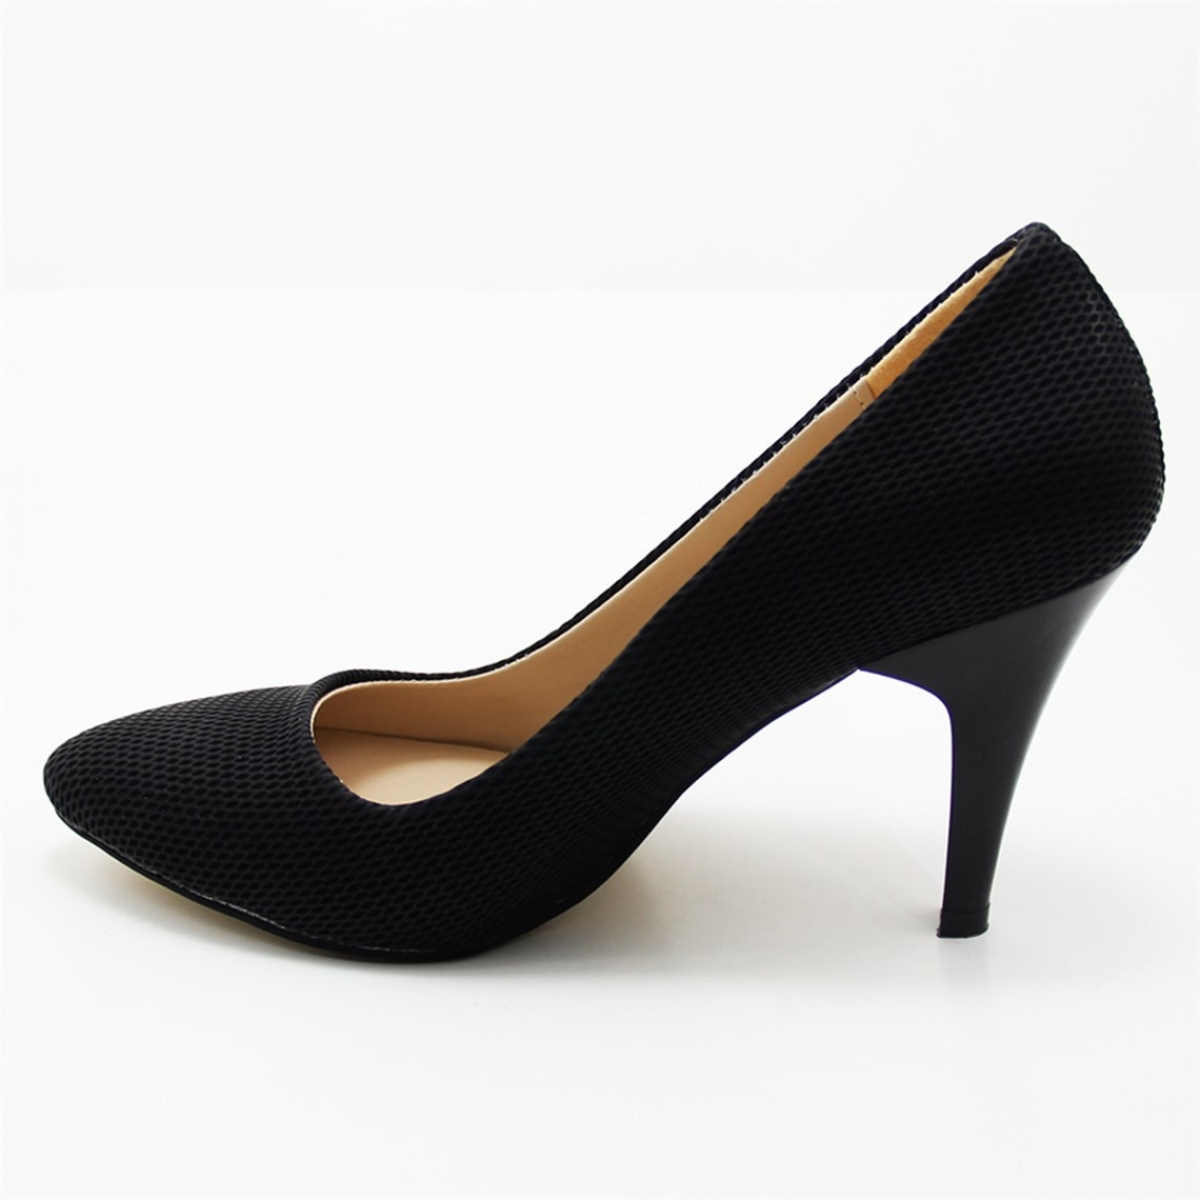 Flo Günlük Topuklu Siyah-Petekli Kadın Ayakkabı N-2500. 2